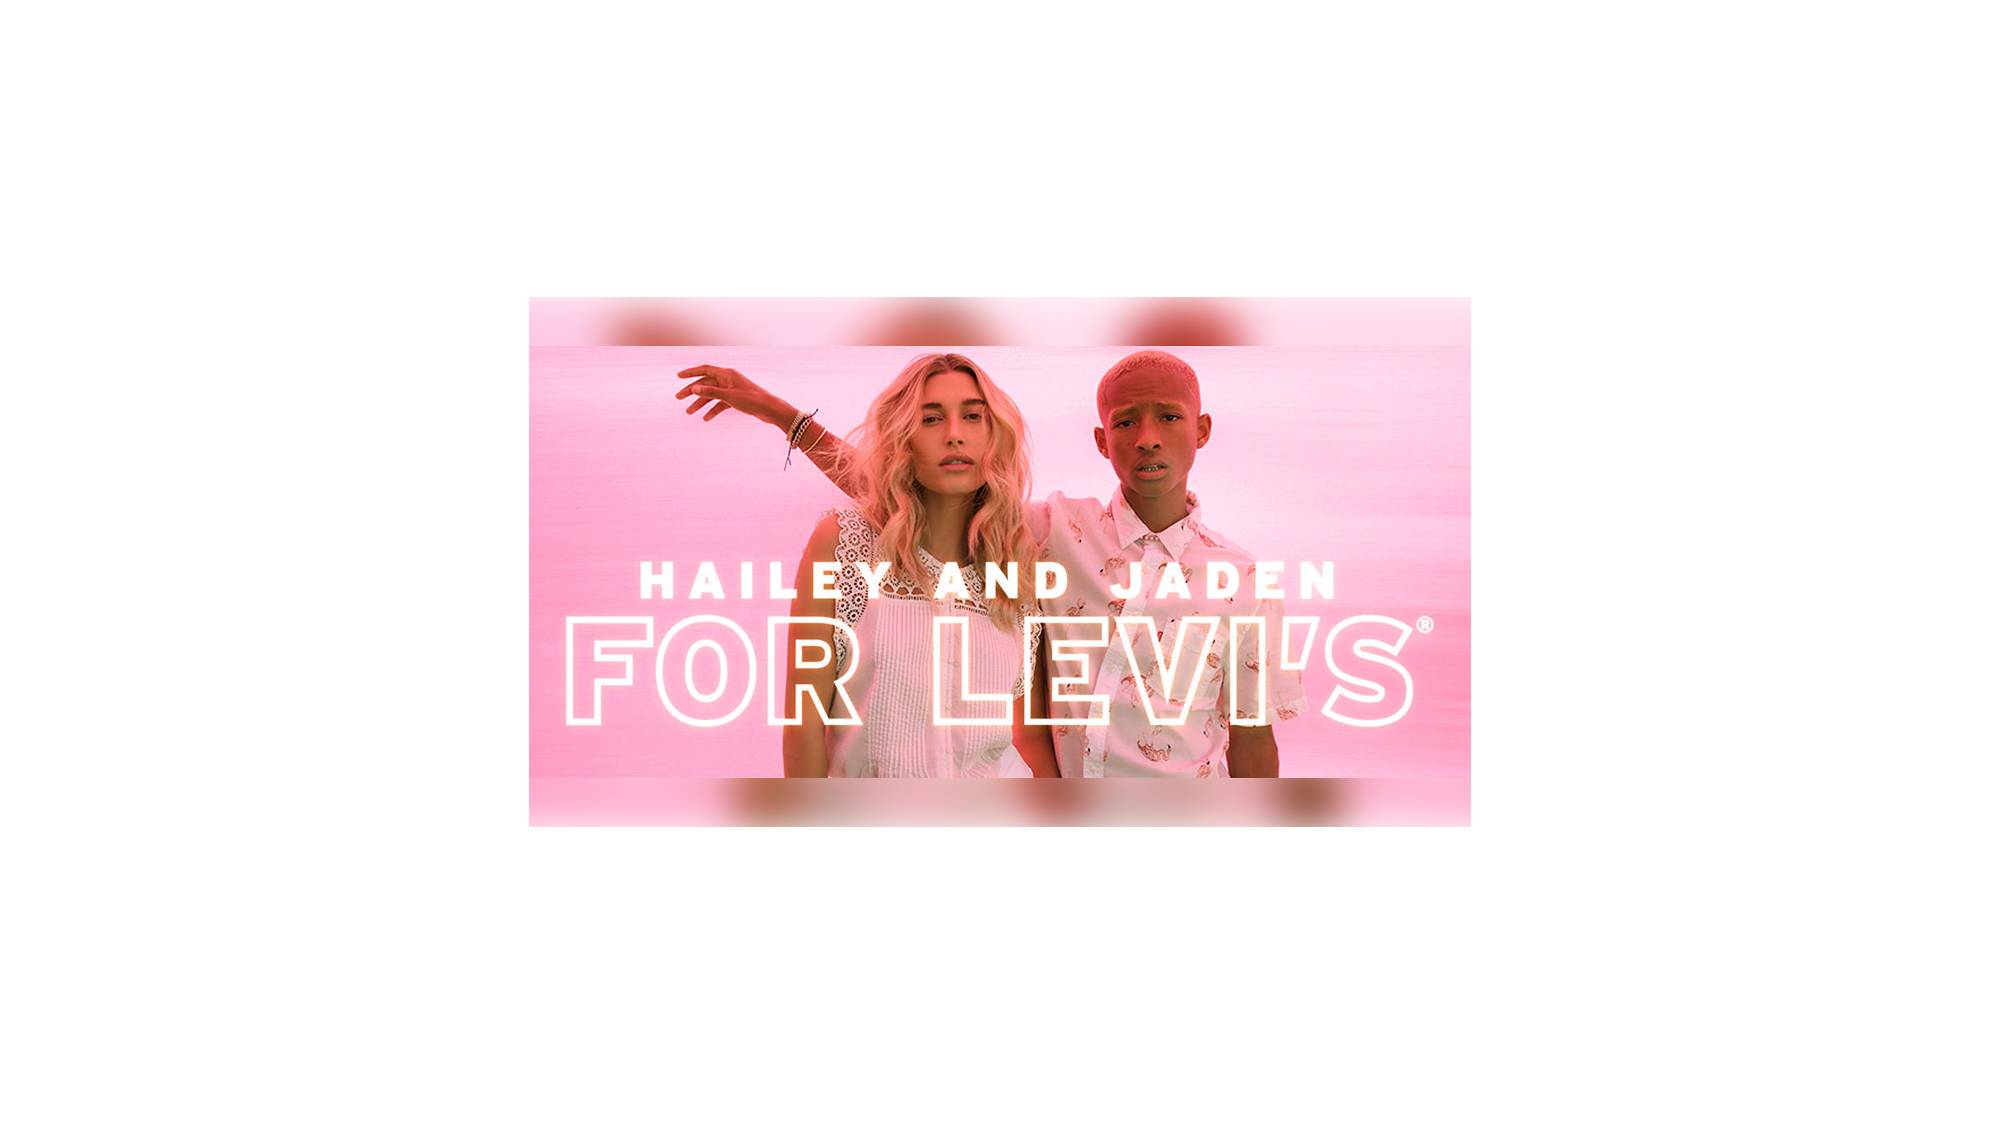 Levi's® 501® Day 2021: Hailey Bieber, Jaden Smith Get Together Online